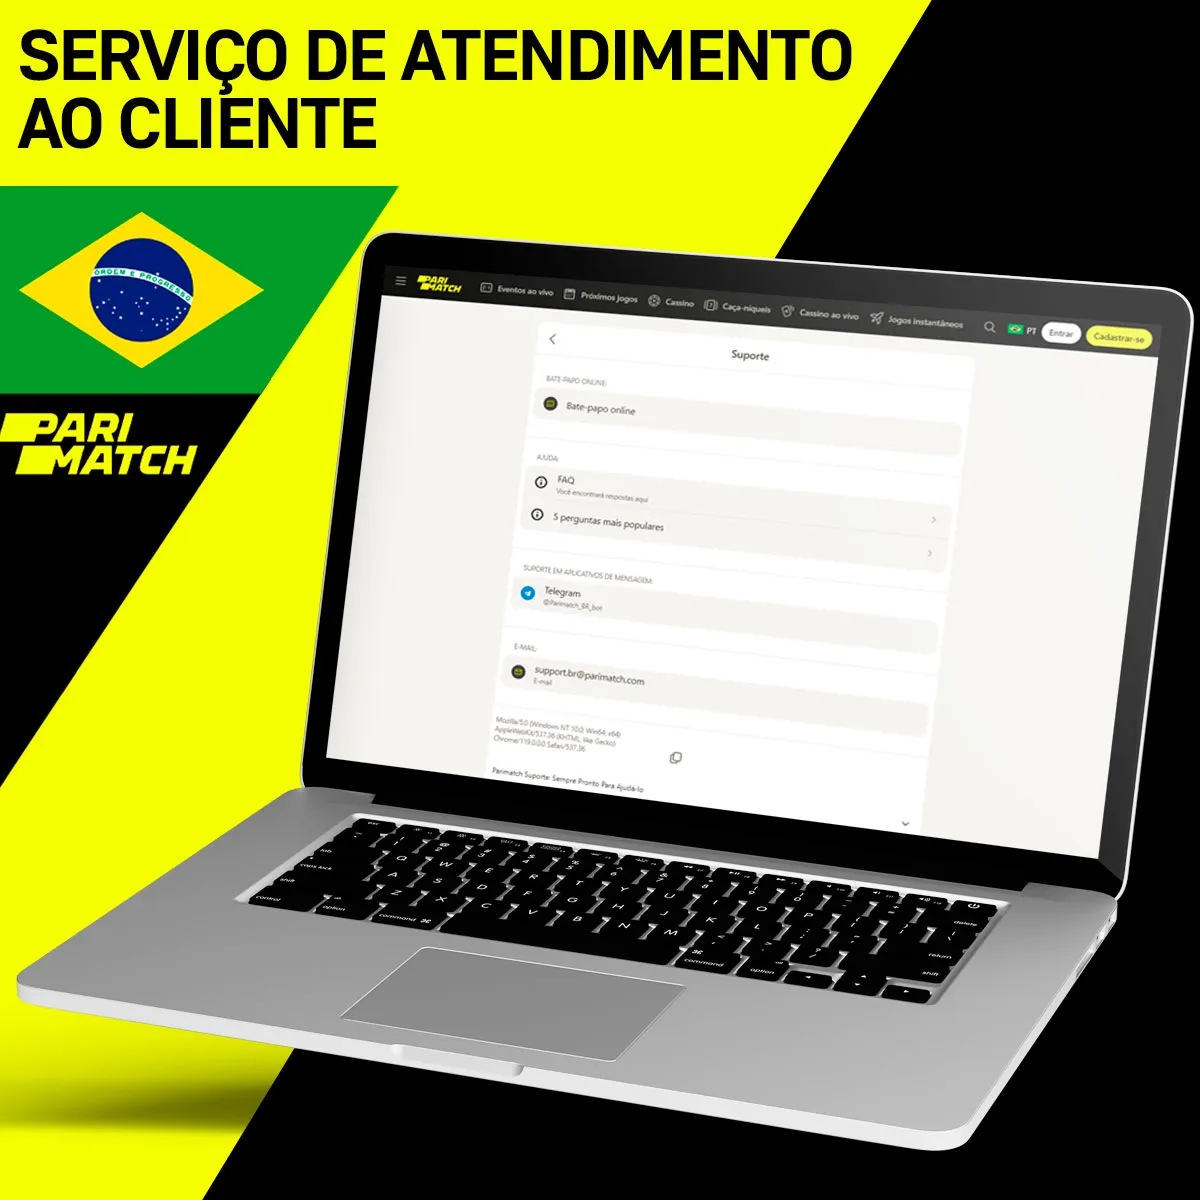 Suporte ao cliente Parimatch Brasil